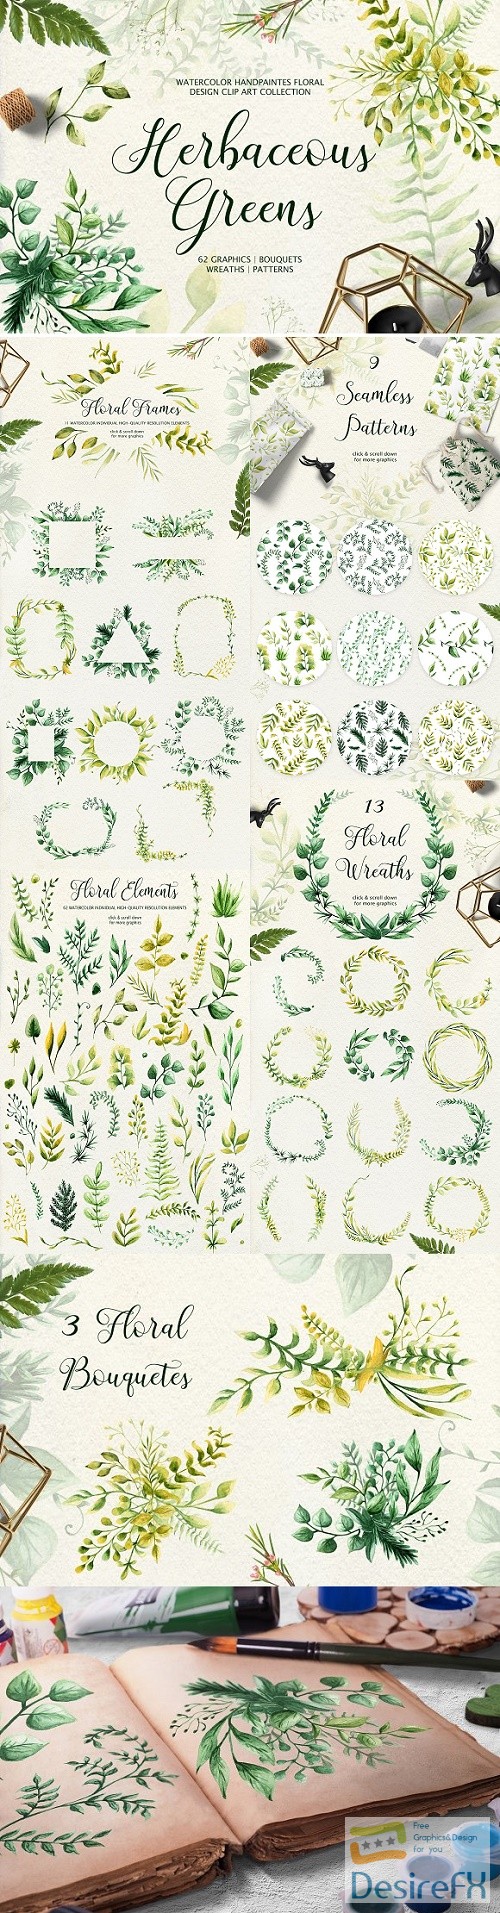 Herbaceous Greens-watercolor set 2534083